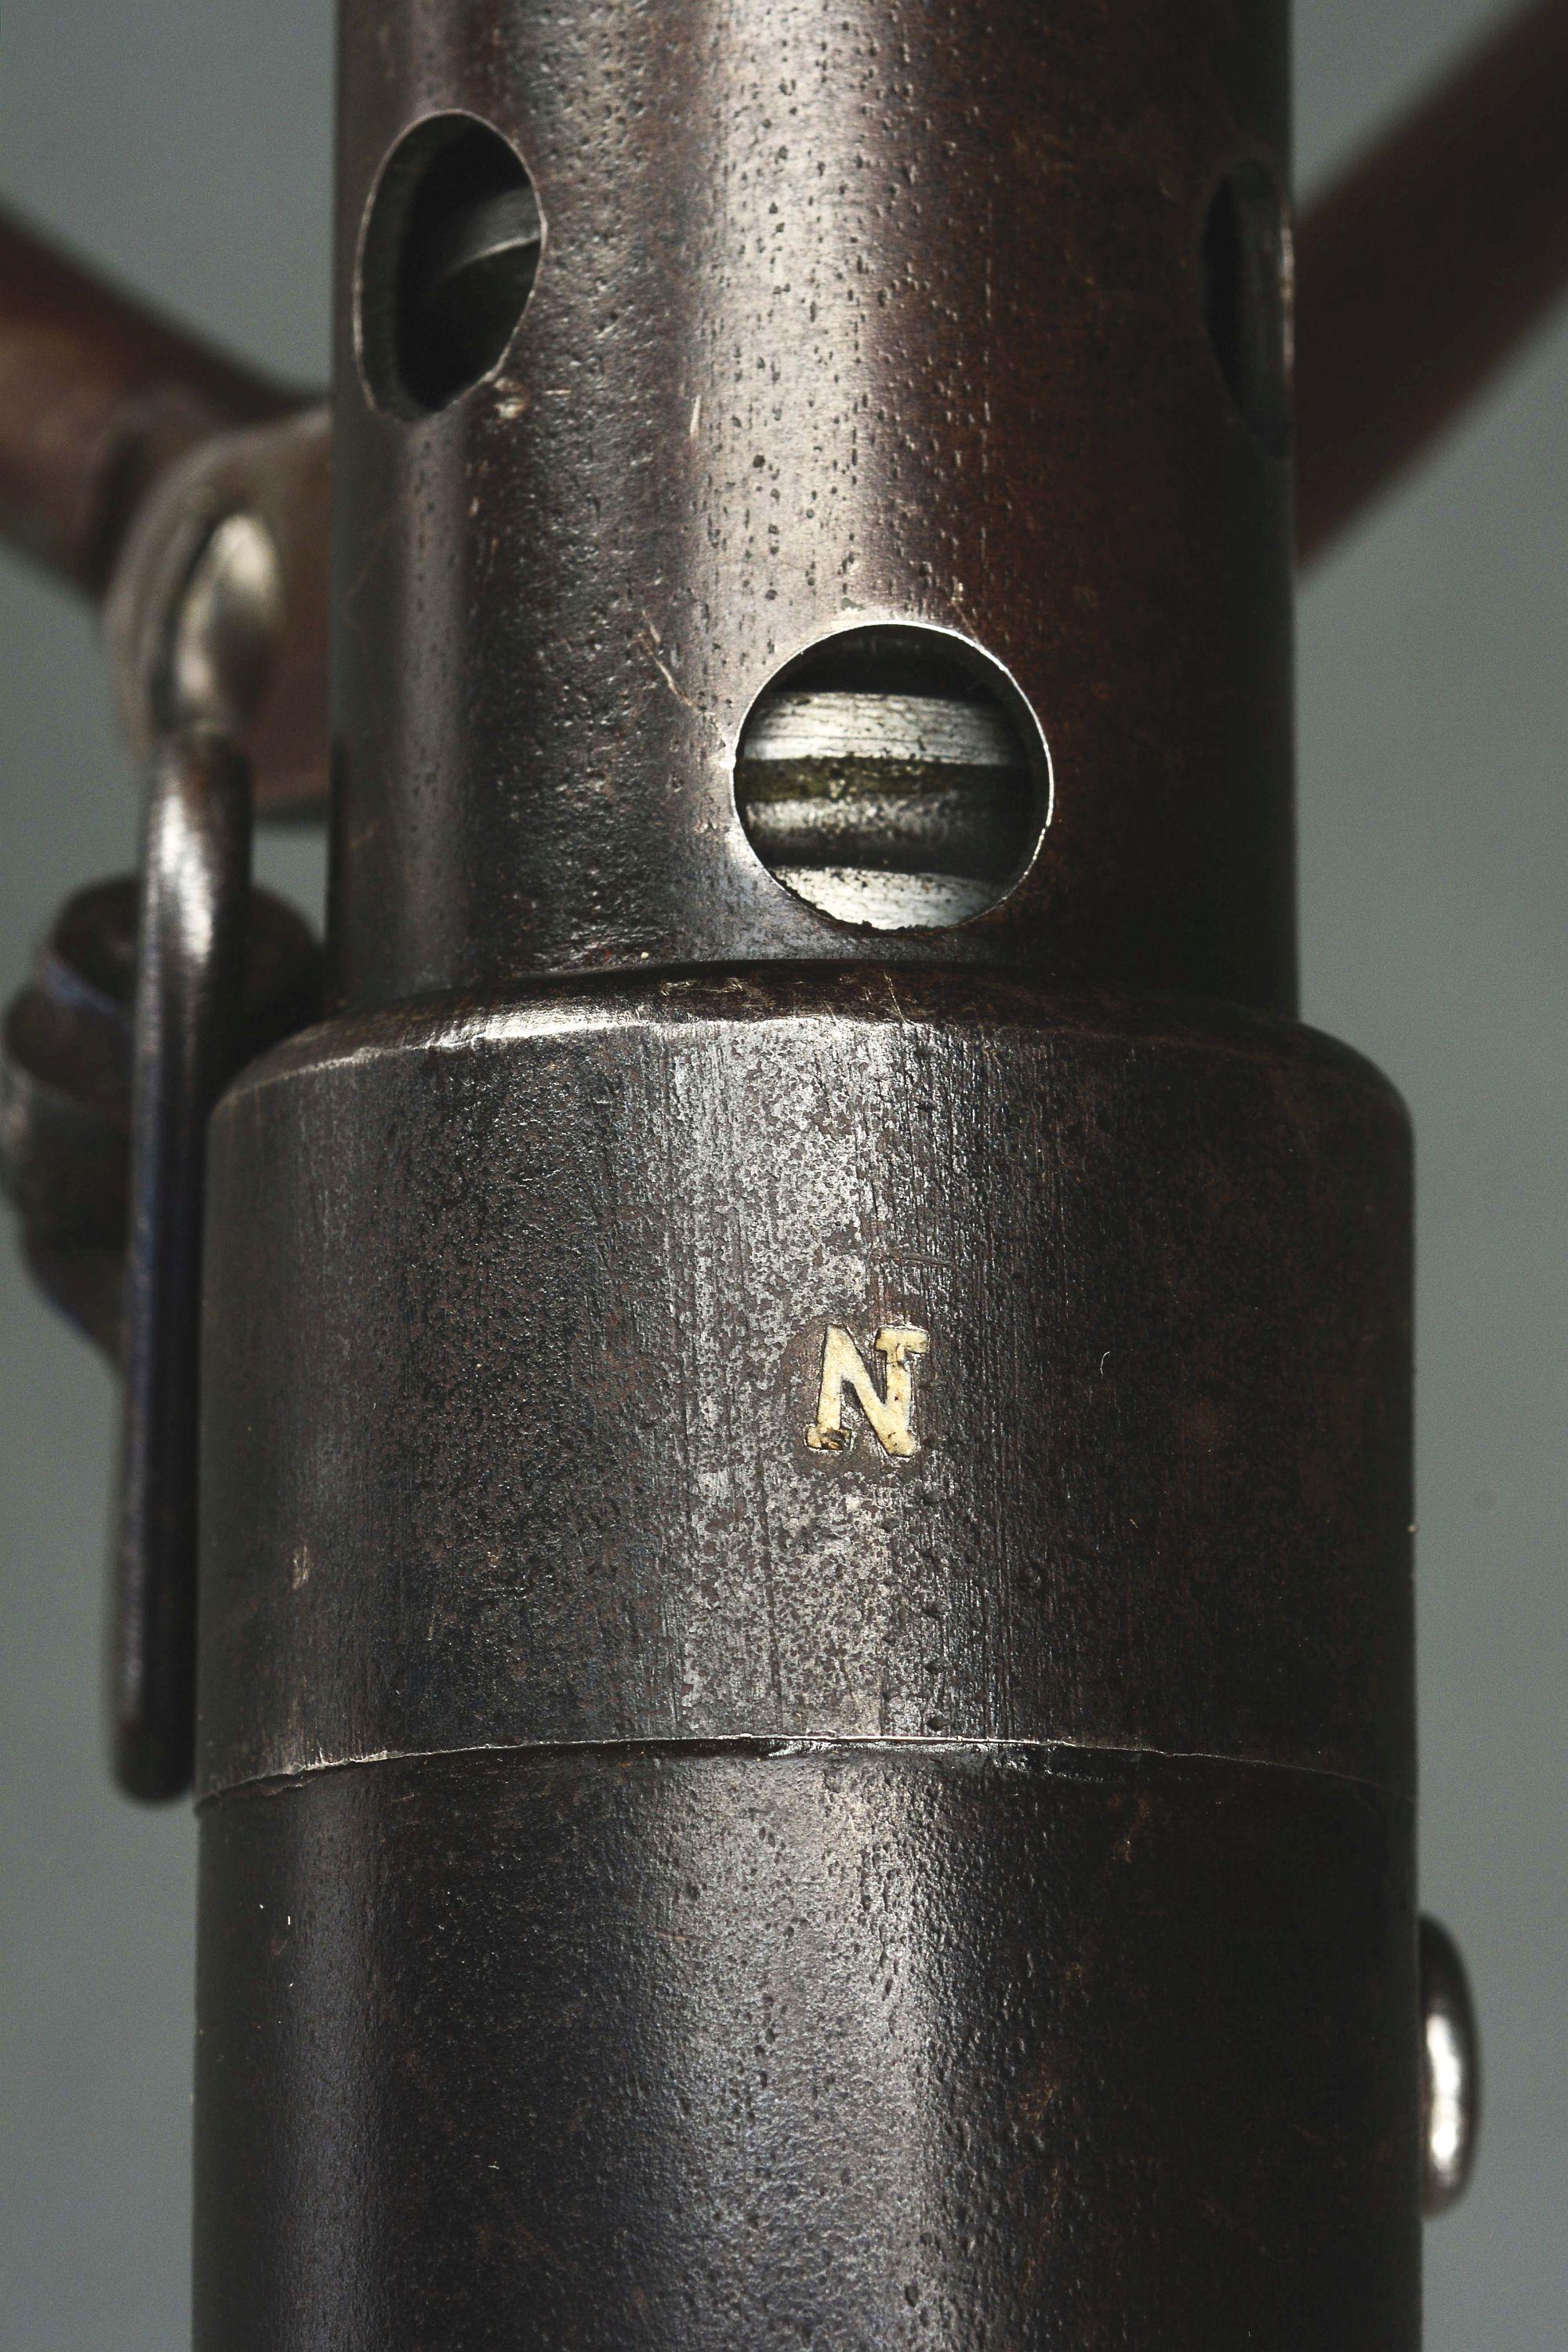 (N) FINE CONDITION SPECIMEN OF HISTORIC WORLD WAR I FRENCH CHAUCHAT MODEL 1915 MACHINE GUN (CURIO AN